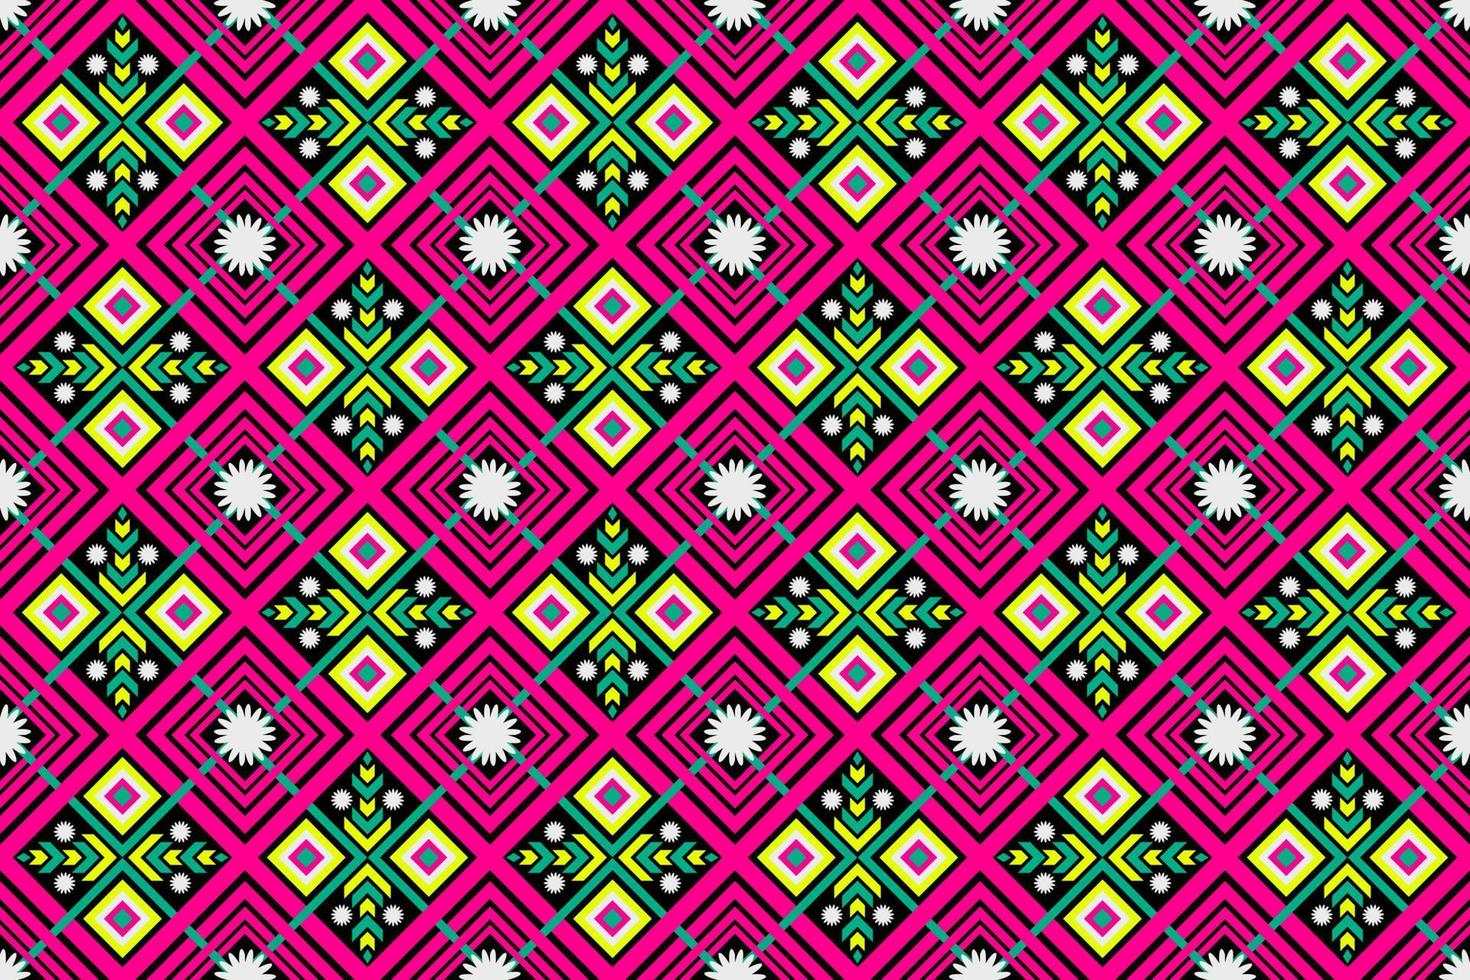 motif harmonieux ethnique géométrique coloré pour le papier peint, l'arrière-plan, le tissu, le rideau, le tapis, les vêtements et l'emballage. vecteur